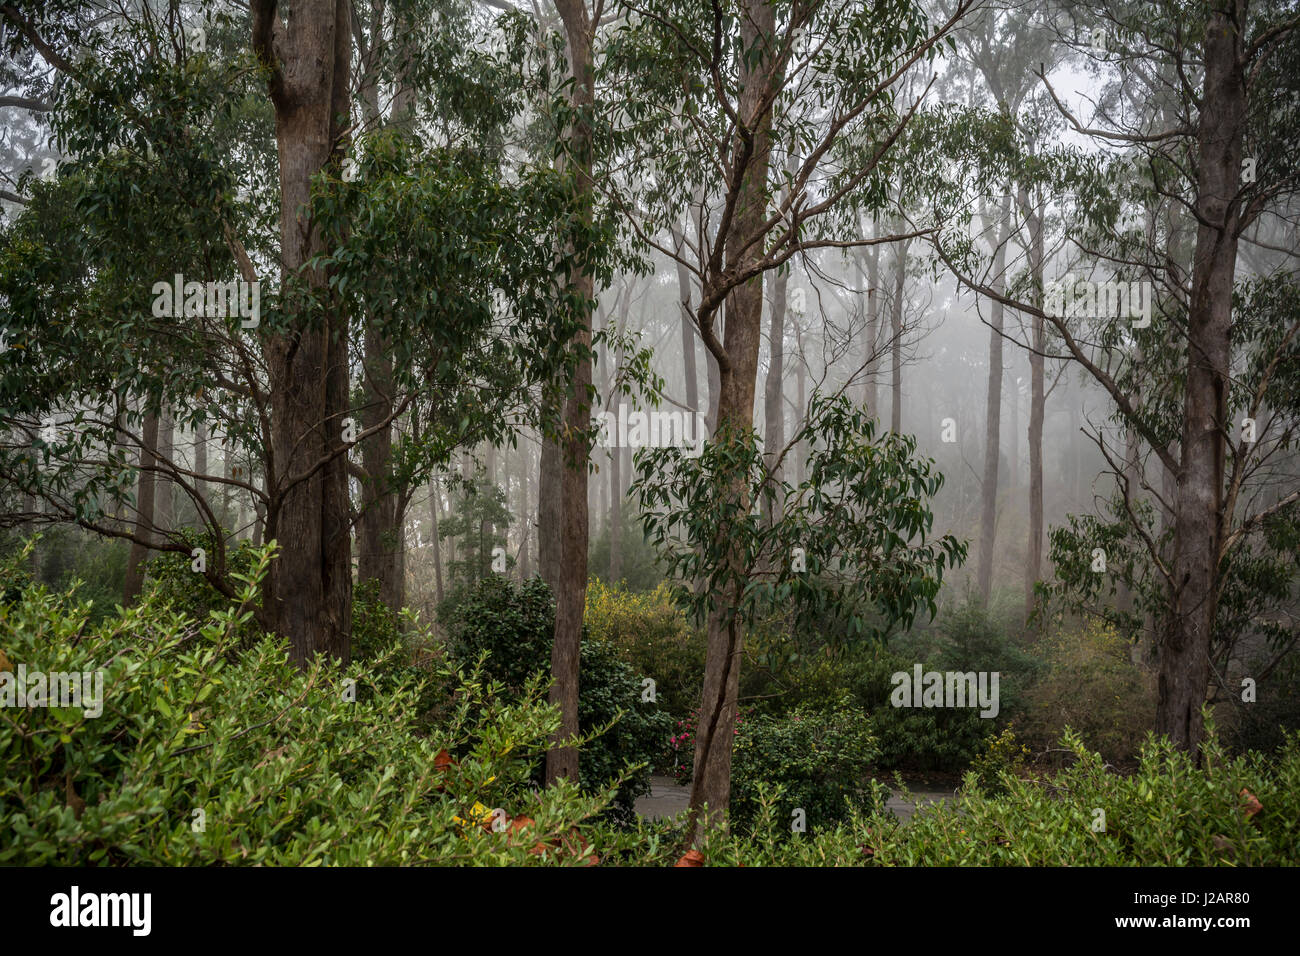 Die majestätischen Eukalyptusbäumen von Mount Lofty Botanischer Garten, South Australia, in Nebel getaucht. Gelegen in den Adelaide Hills, Crafers, Südaustralien. Stockfoto